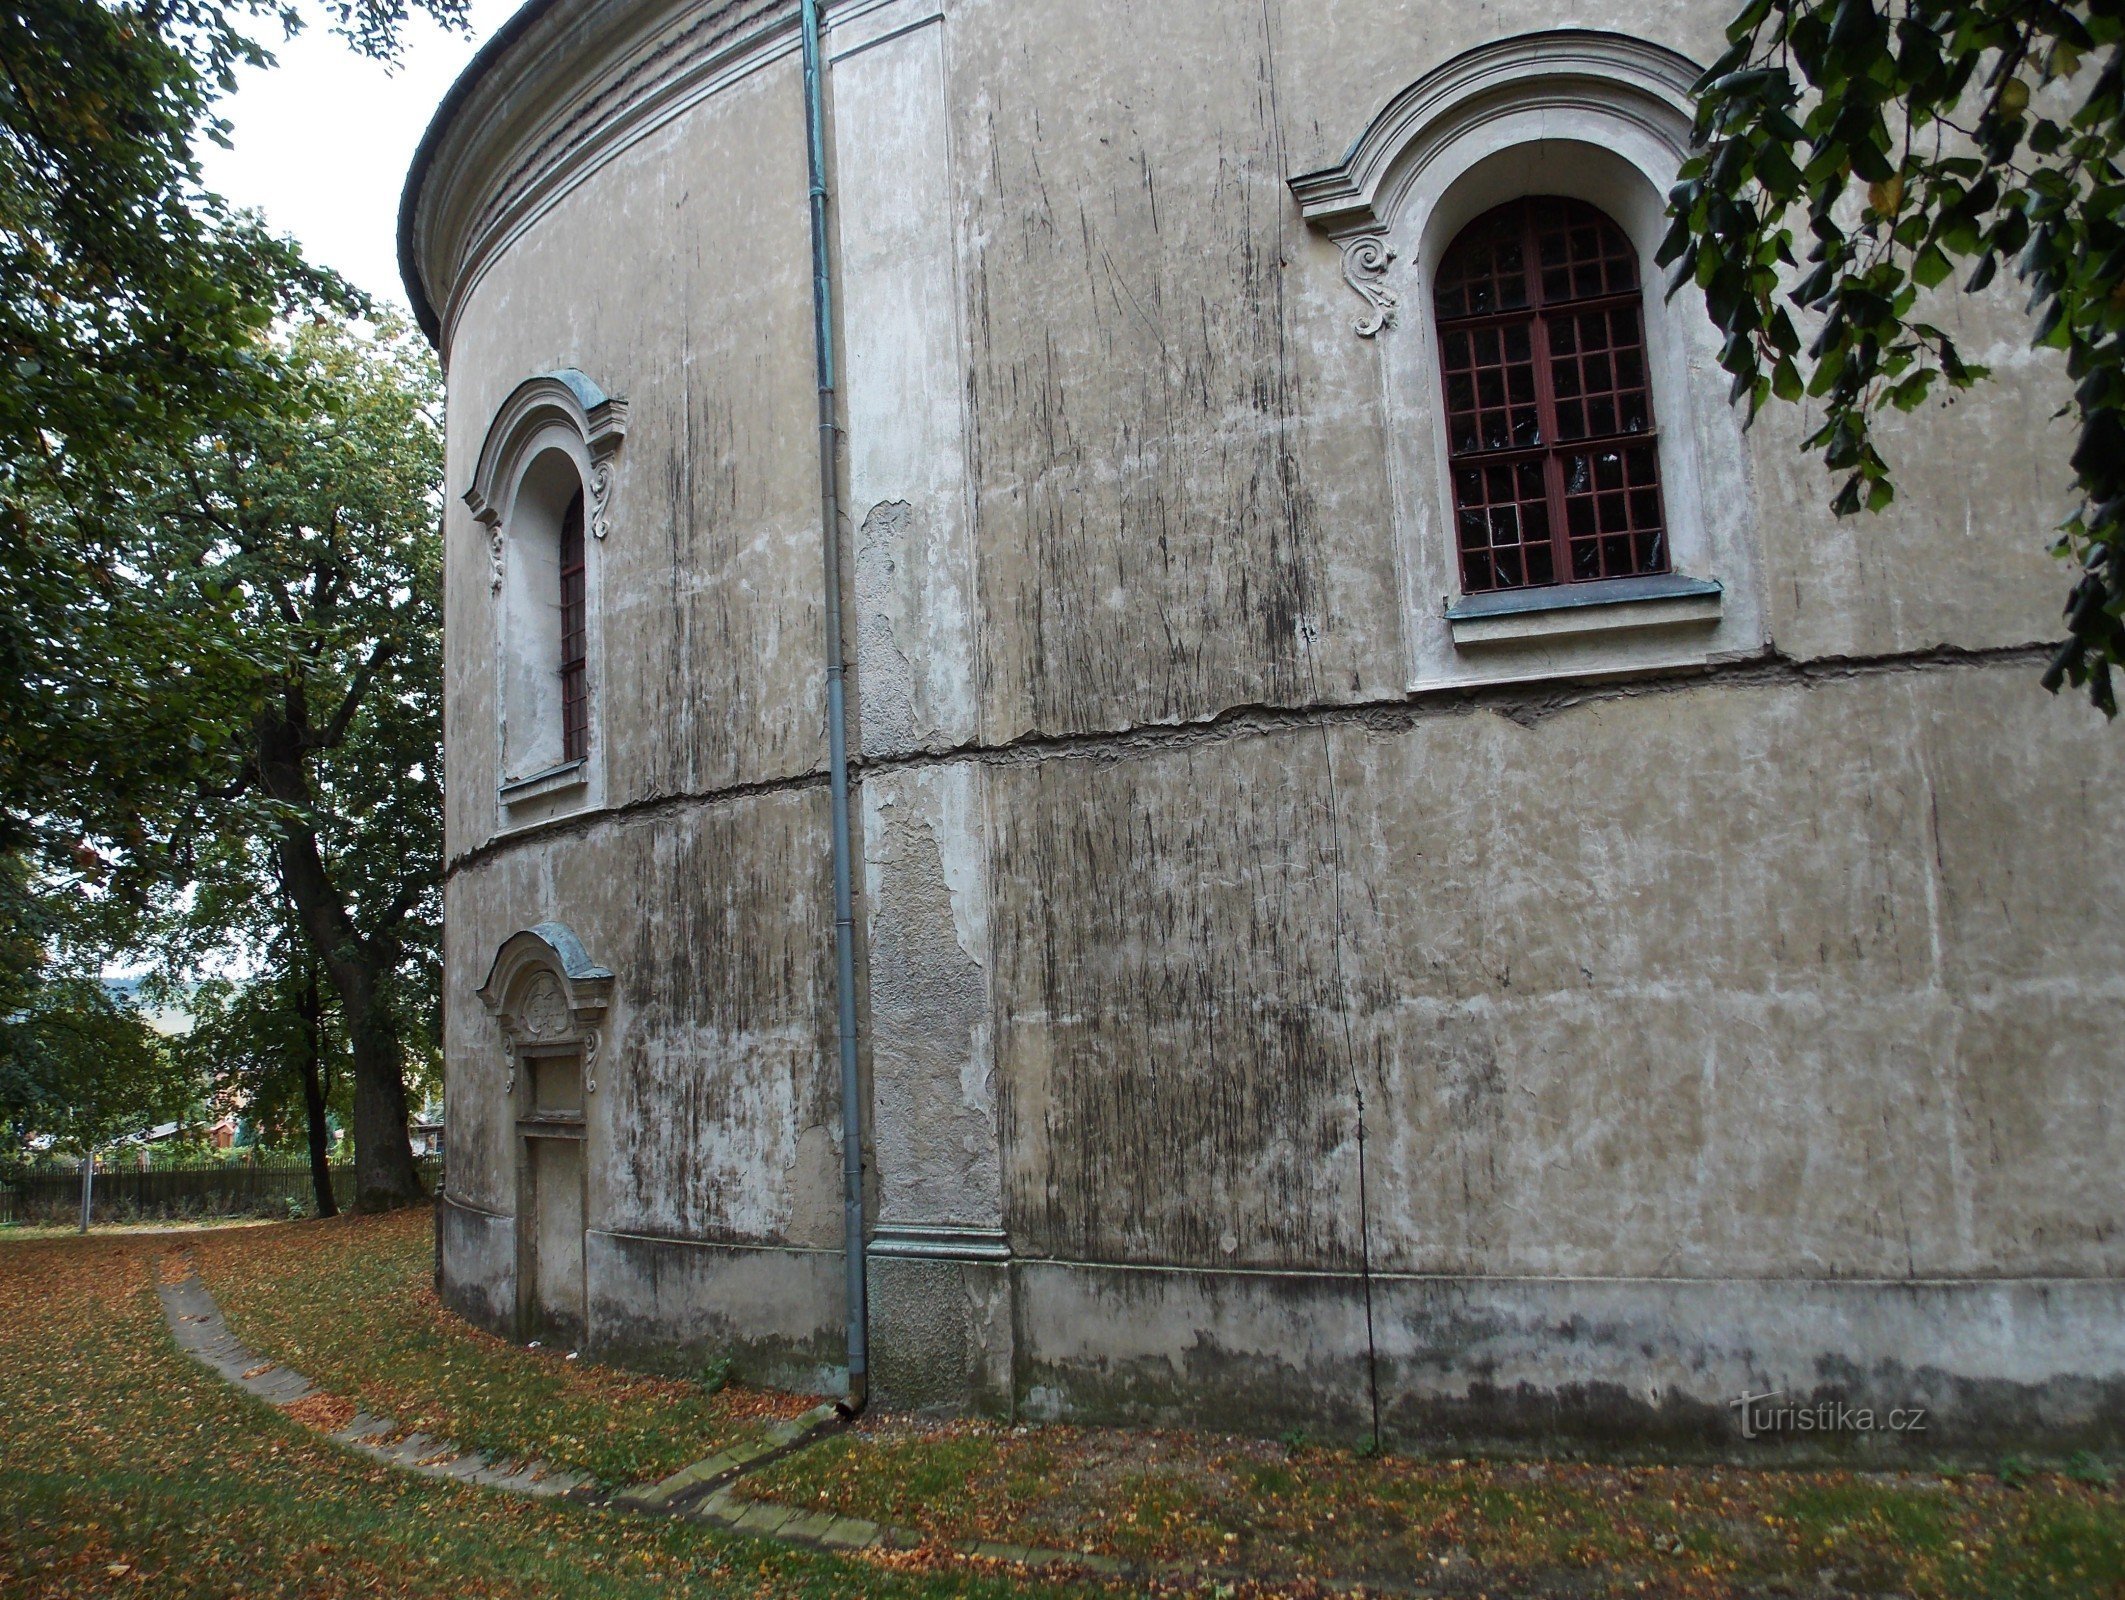 Rýmařov legértékesebb műemléke a lipkyi kápolna